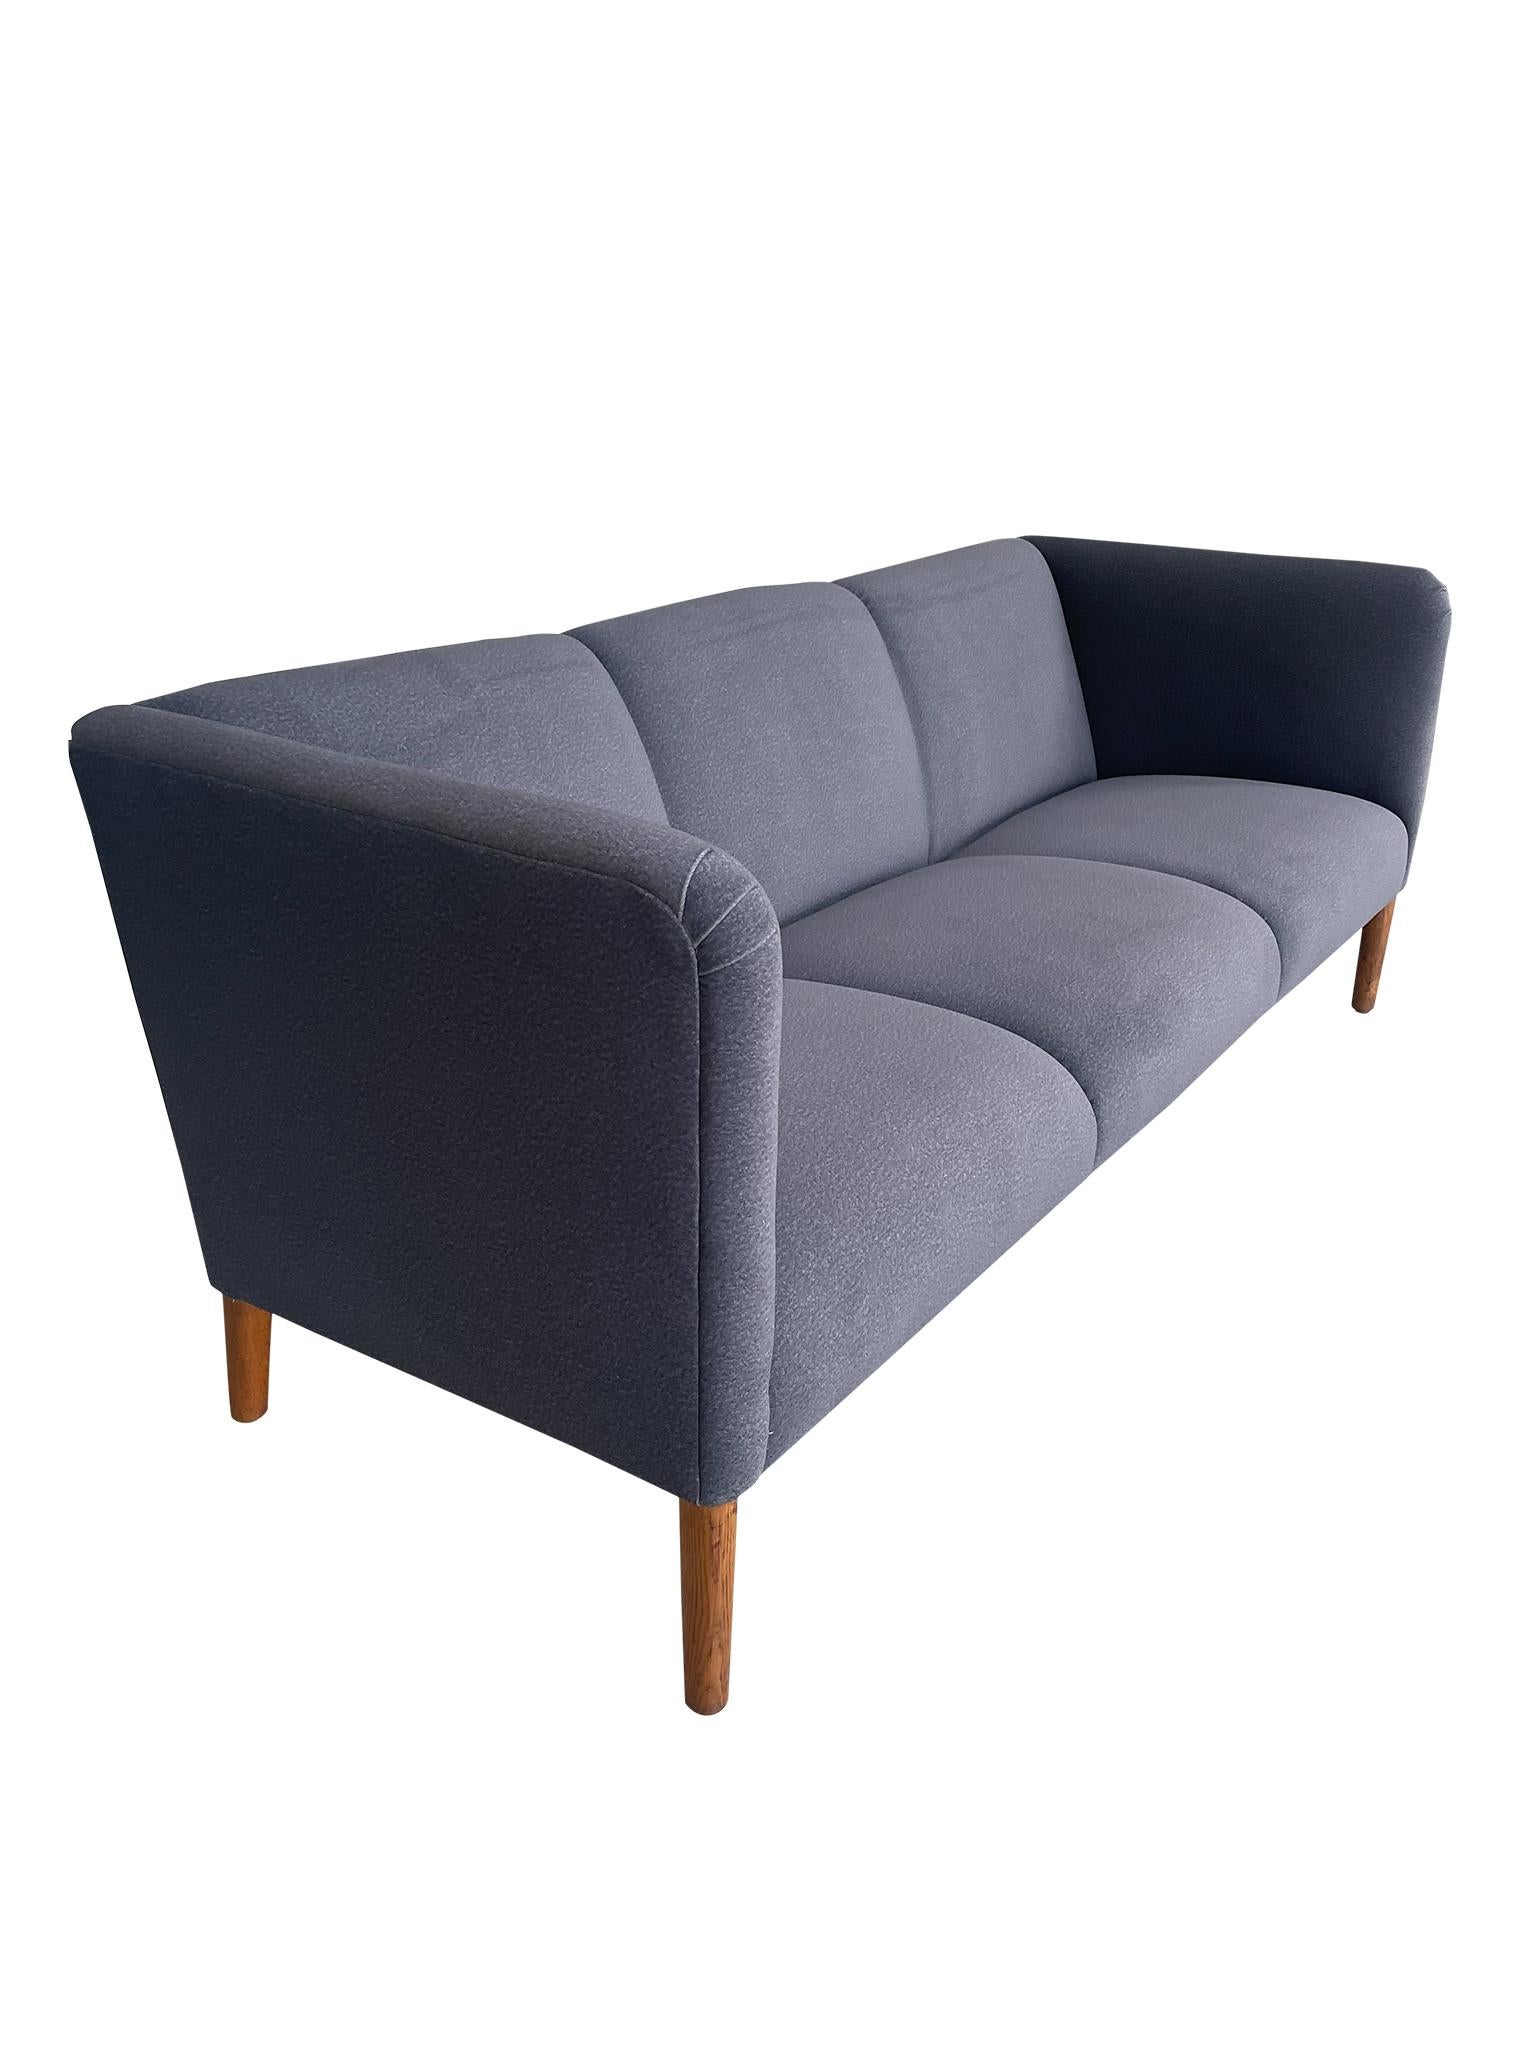 Magnifique canapé moderne danois modèle AP18 par le prolifique designer de meubles du milieu du siècle Hans Wegner pour AP Stolen. Ce modèle de canapé A.Profiles se caractérise par son profil épuré, ses trois places et son dossier légèrement